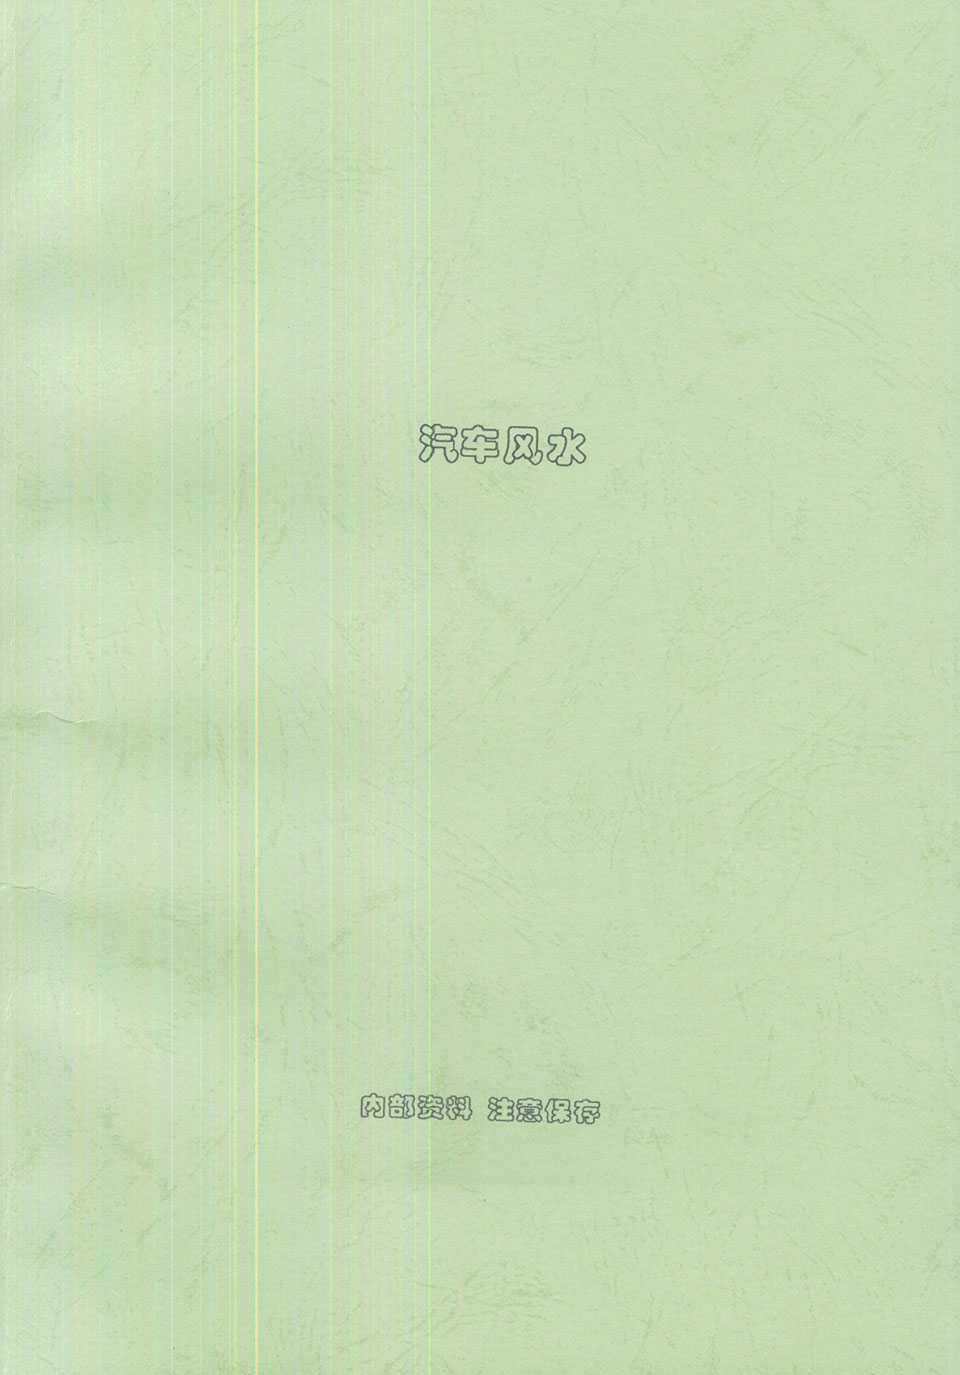 Liu Pusheng《 Automotive Feng Shui》62 pages.pdf